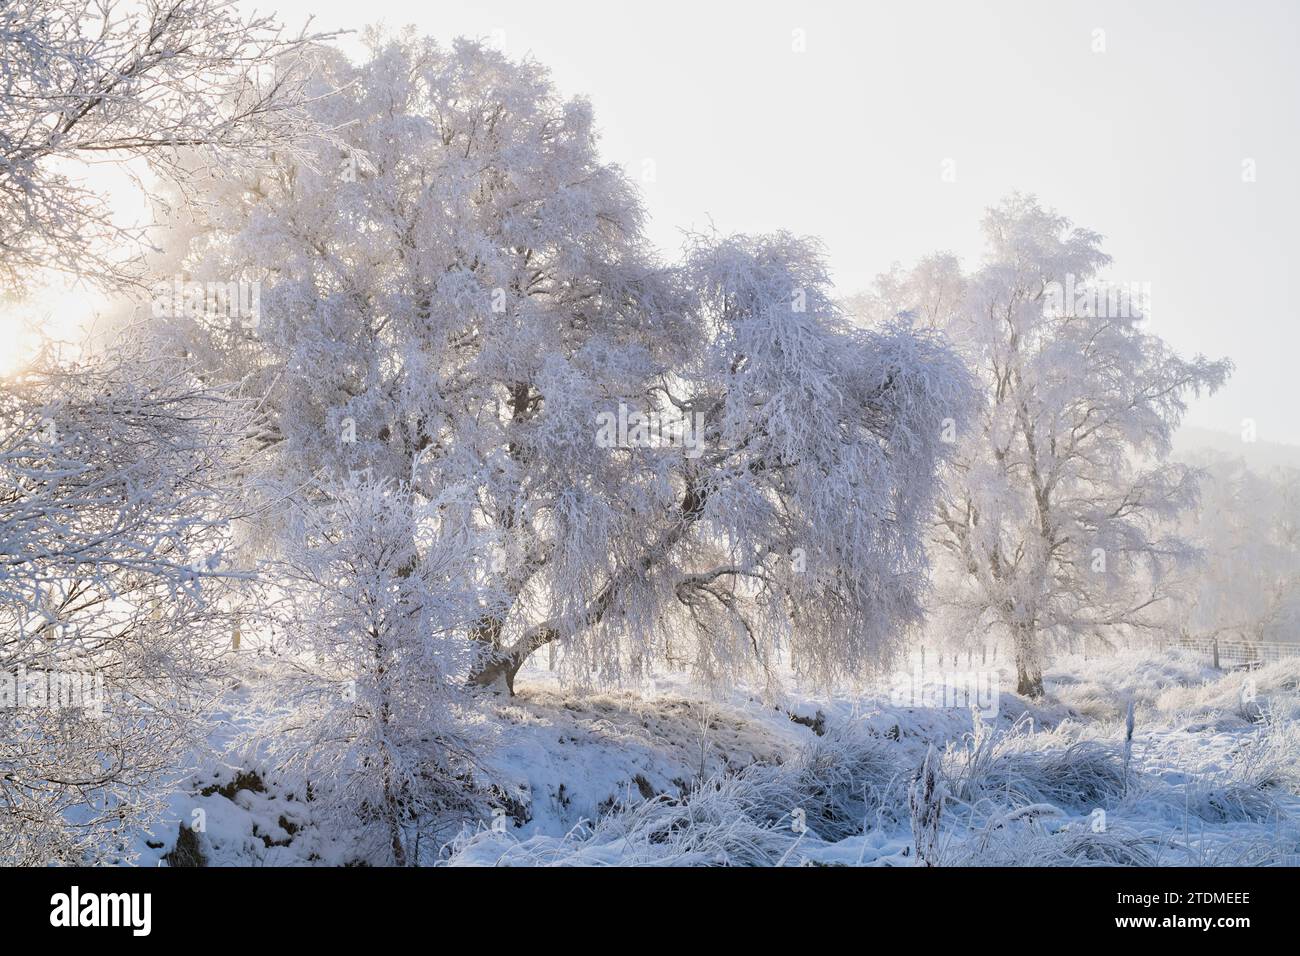 Neige de décembre, brouillard et gelée de canular sur les bouleaux argentés dans la campagne de la Moray. Morayshire, Écosse Banque D'Images